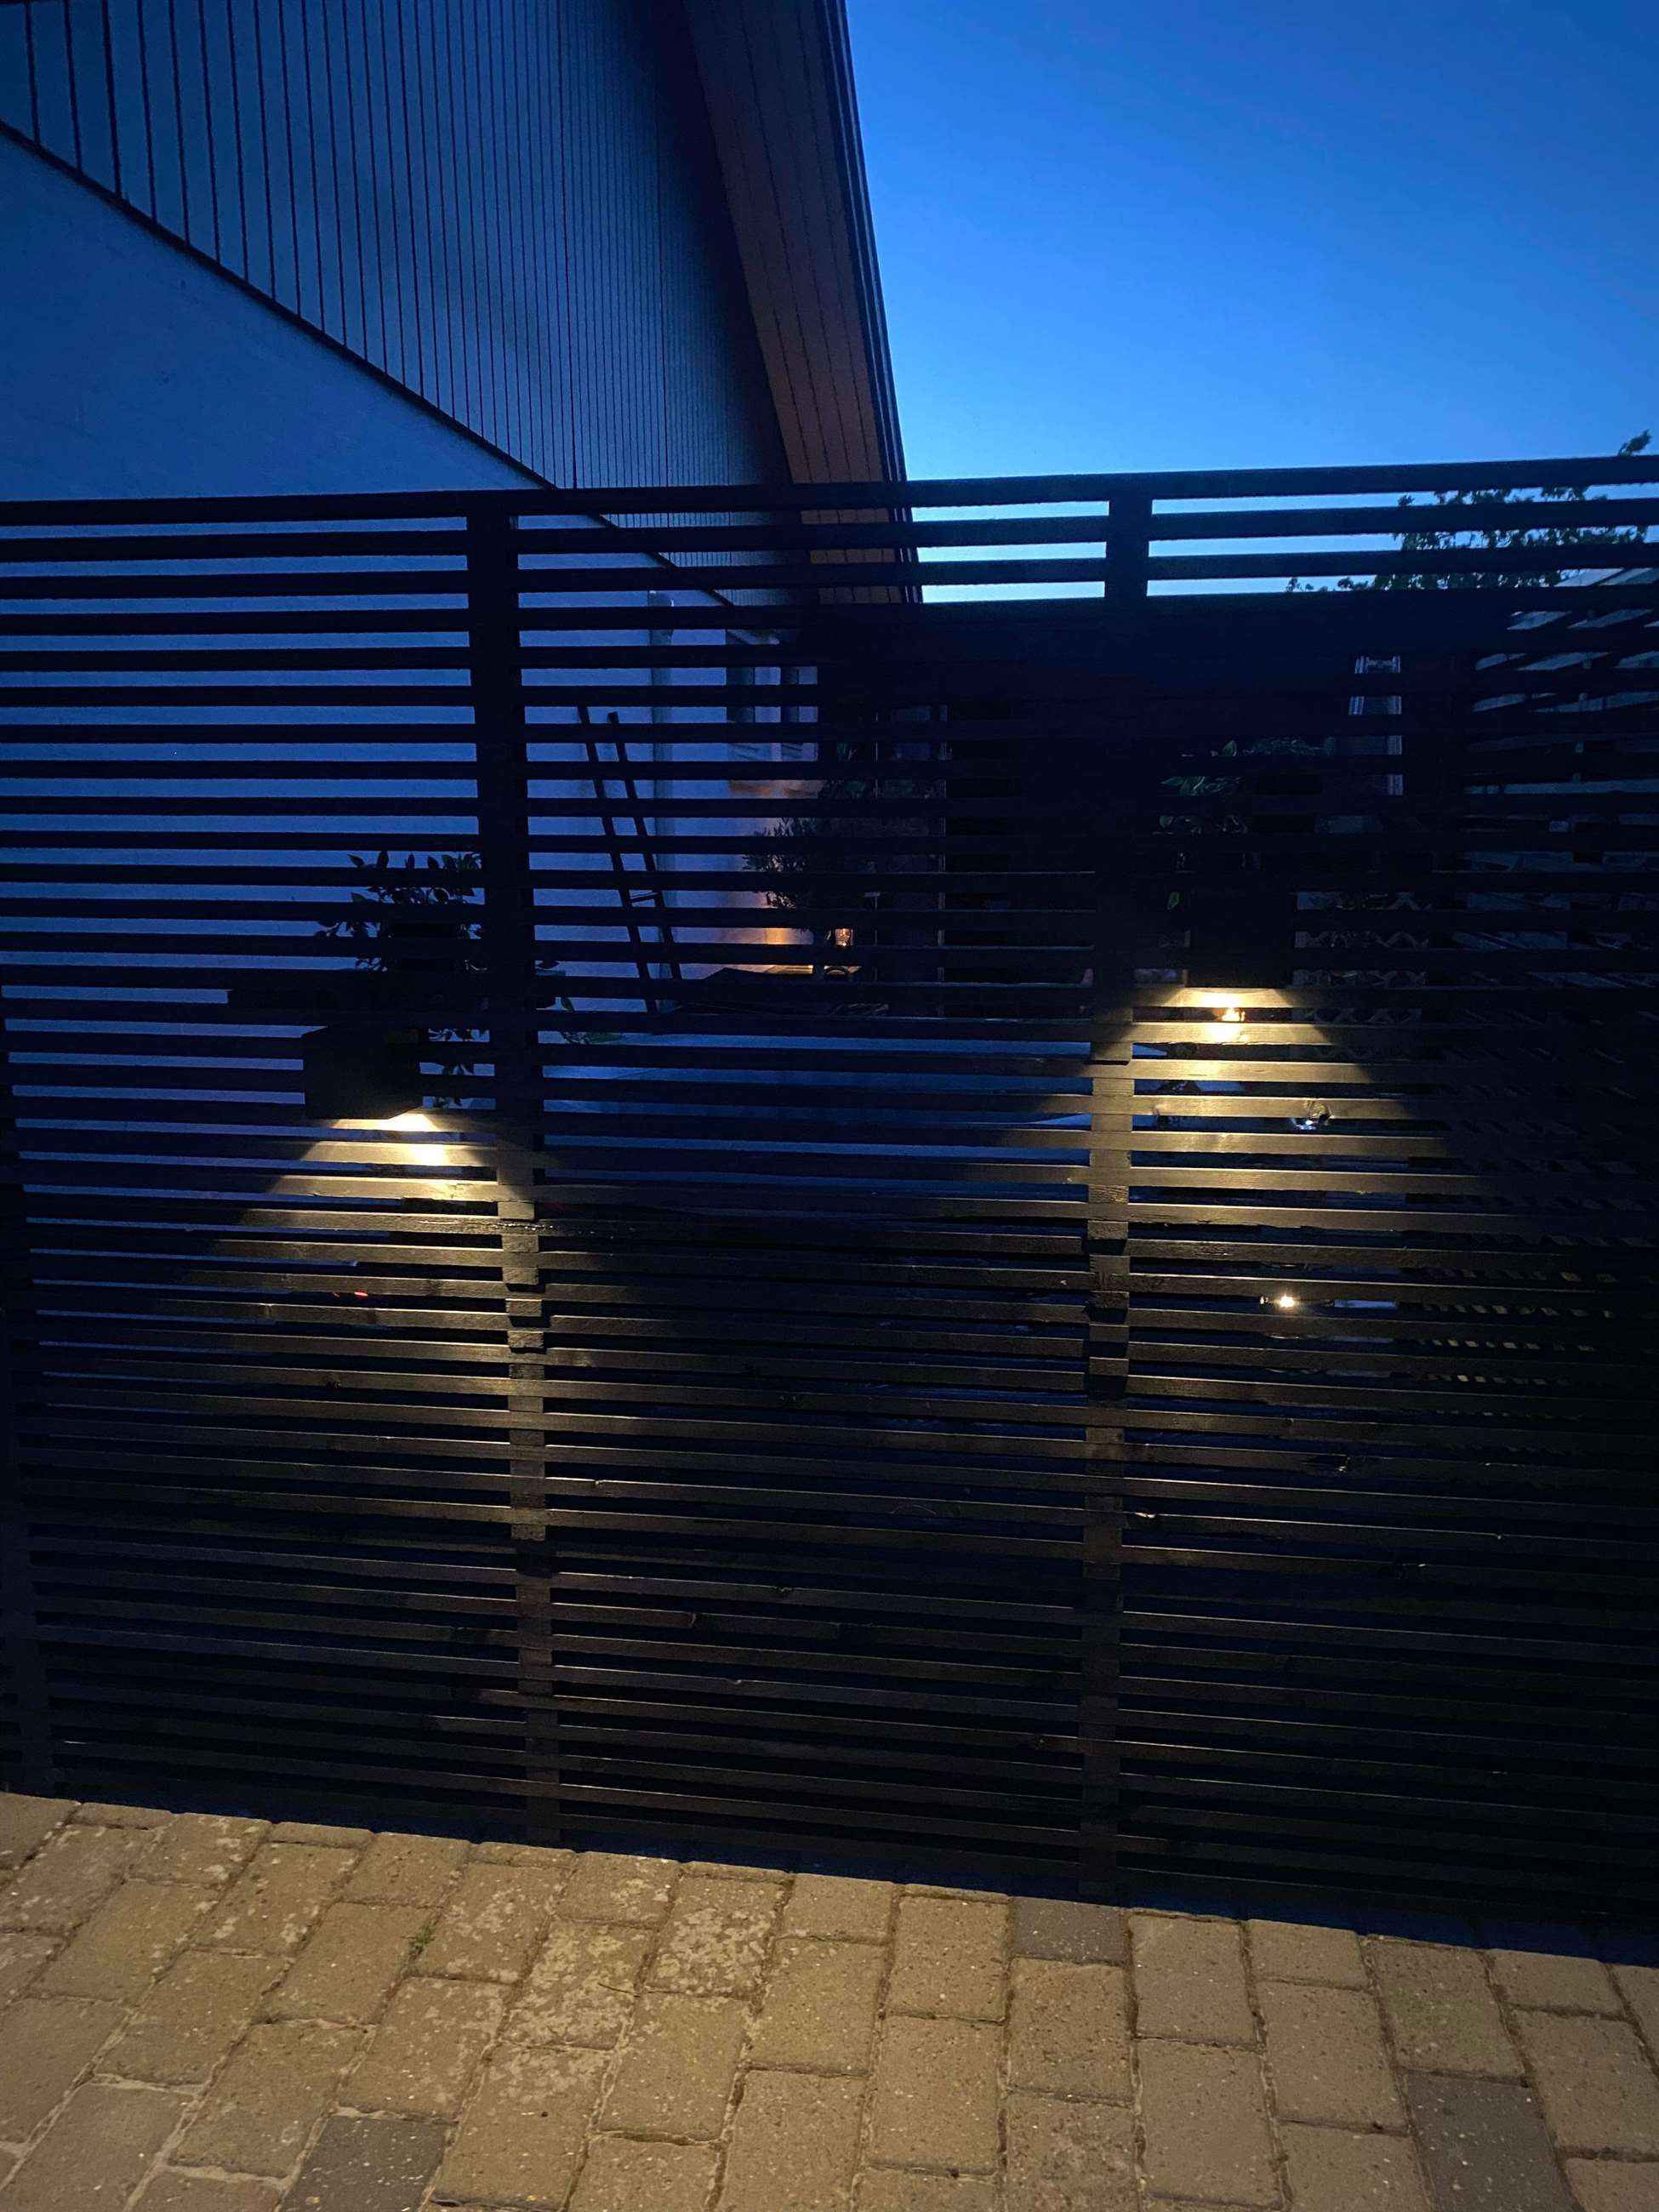 Traller-til-hegn-i-sort-til-spa-bad-på-terrassen-med-flytbar-solcellelamper